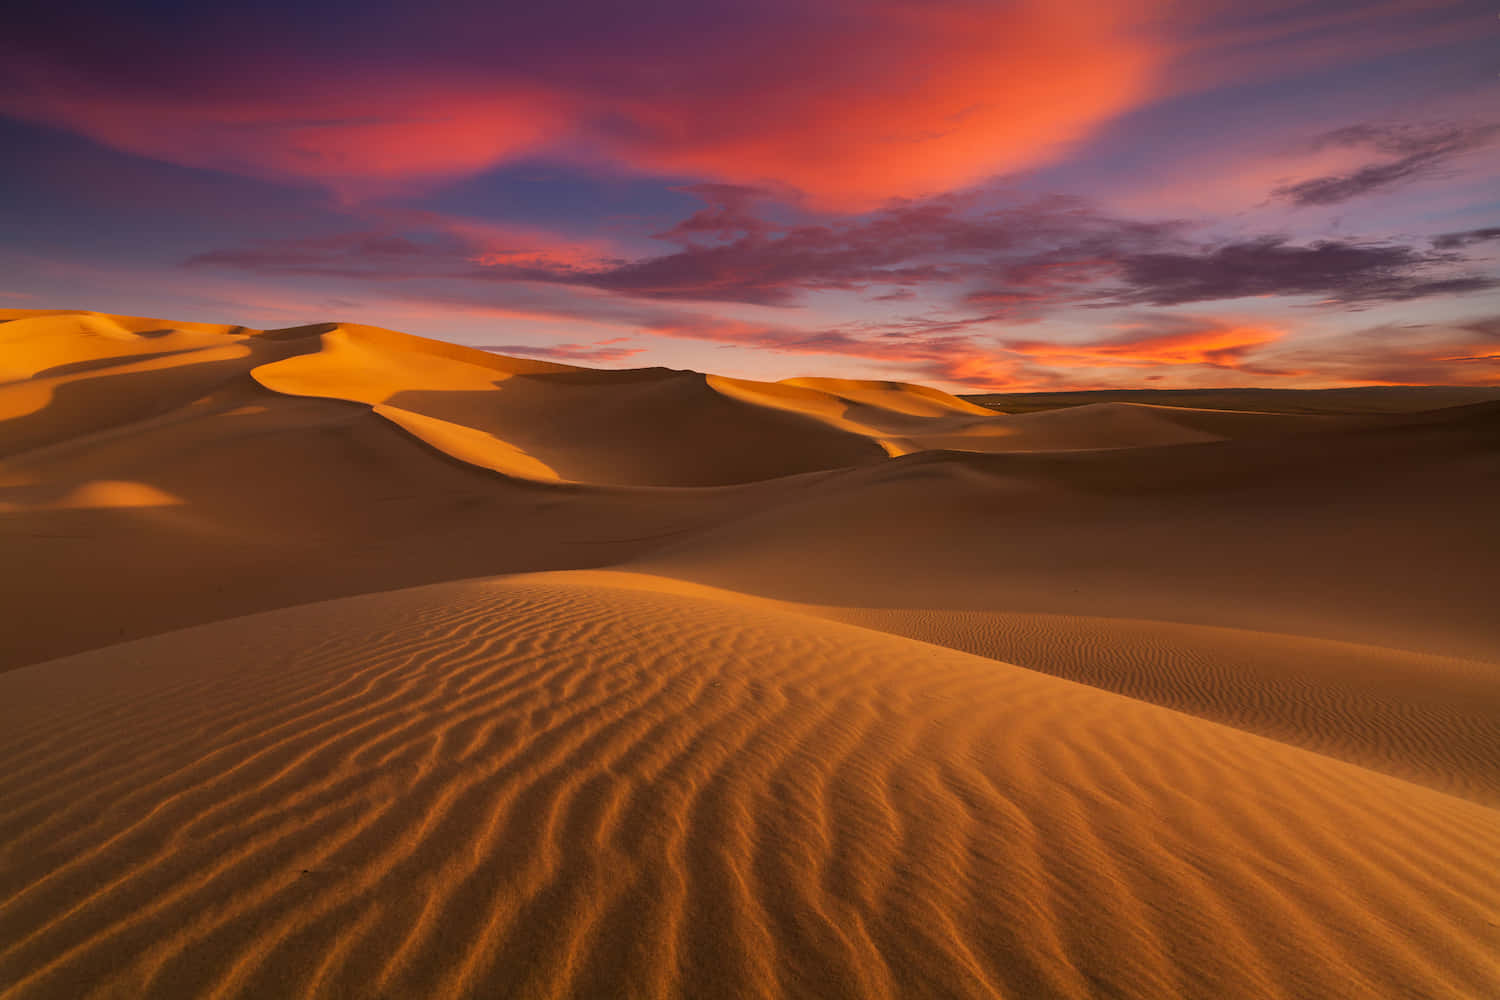 "The awe-inspiring beauty of the desert"